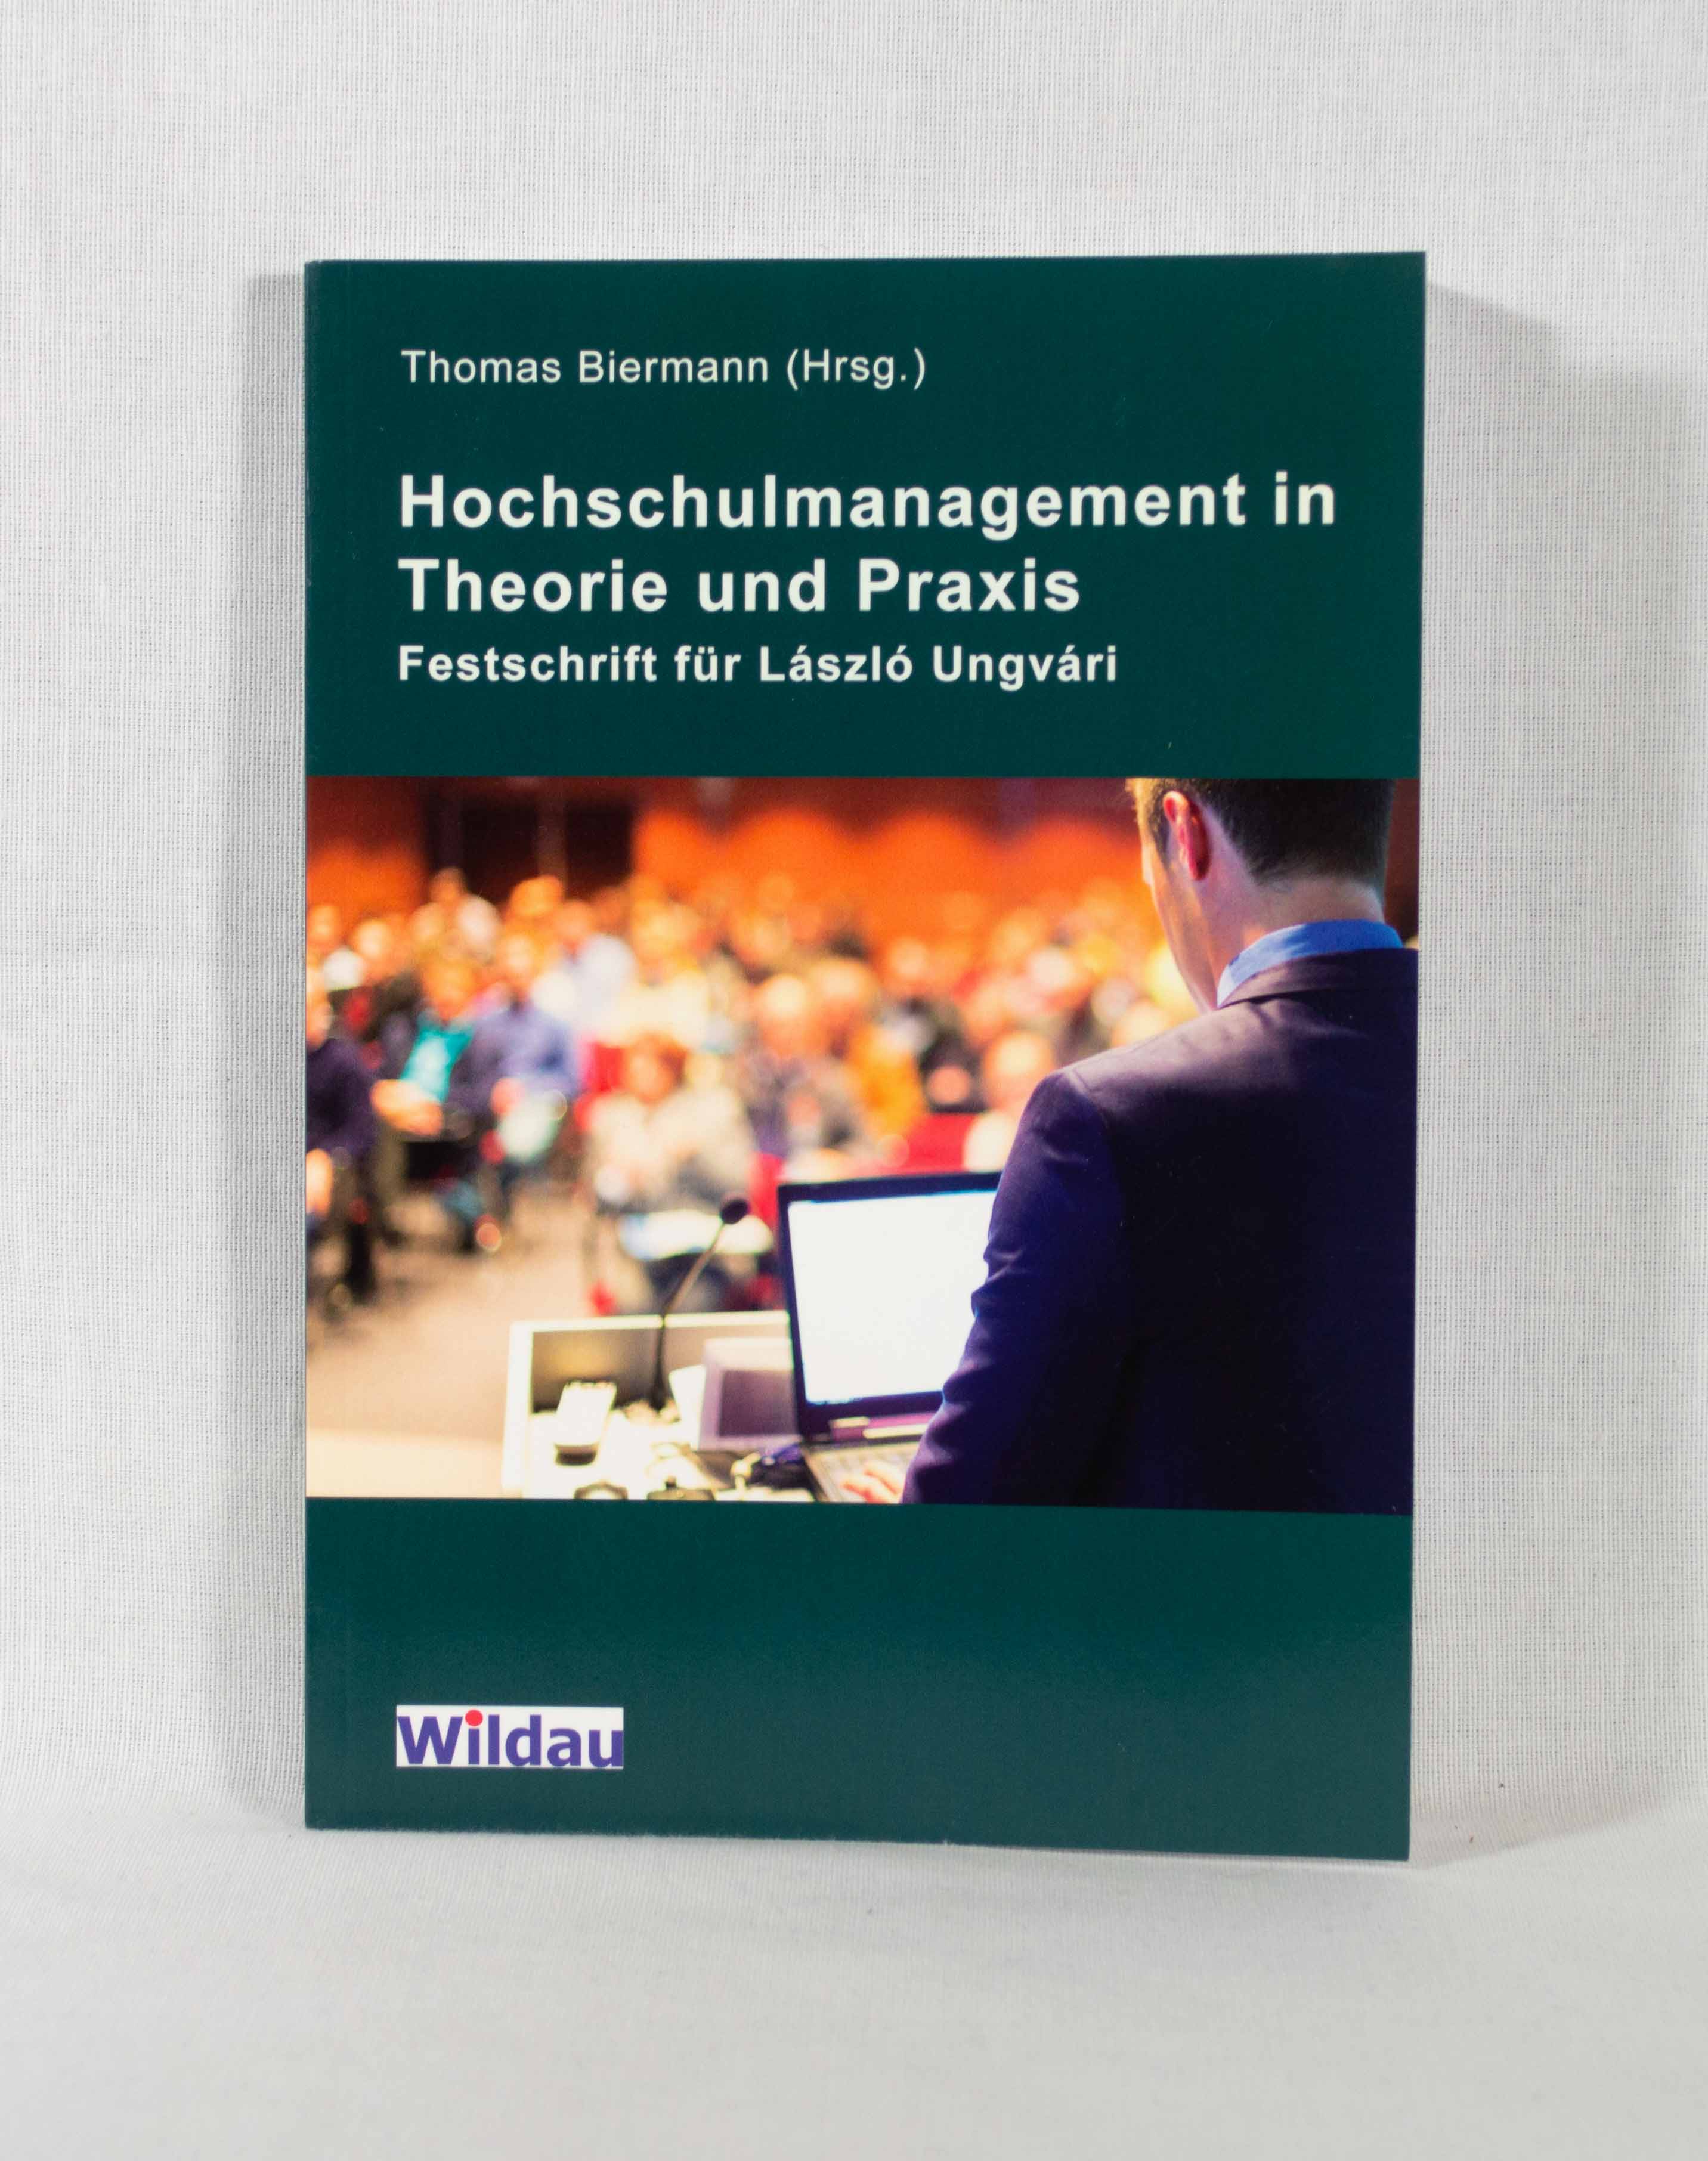 Hochschulmanagement in Theorie und Praxis: Festschrift für László Ungvári. - Biermann, Thomas (Hg.) und Dietmar Woidke (Vorw.)